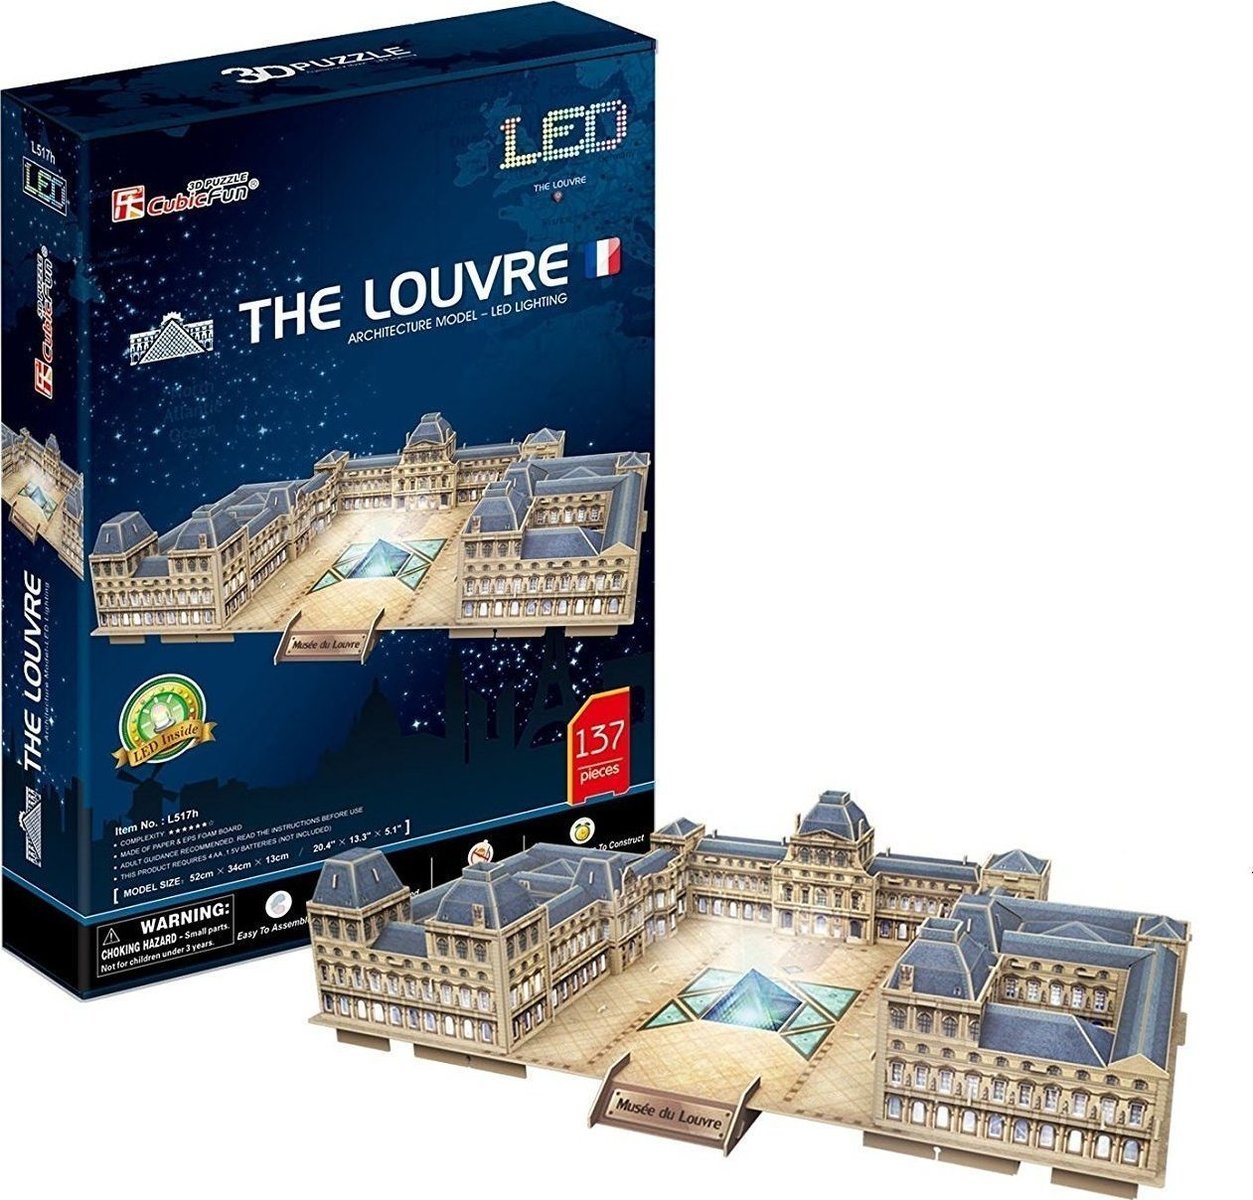 (L517h) THE LOUVRE - LED